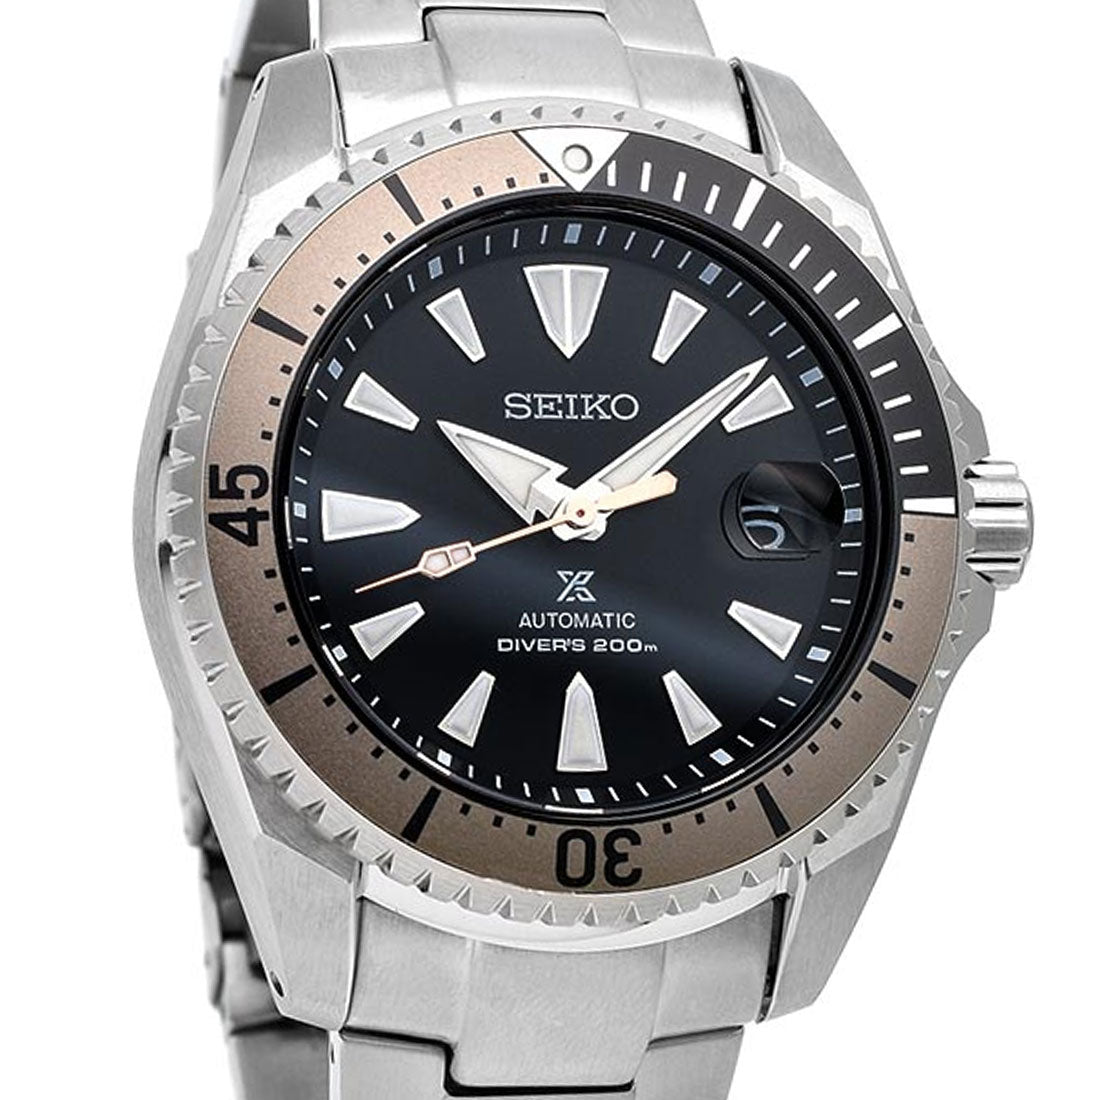 Seiko JDM Shogun SBDC129 Prospex Titanium Diving Watch -Seiko